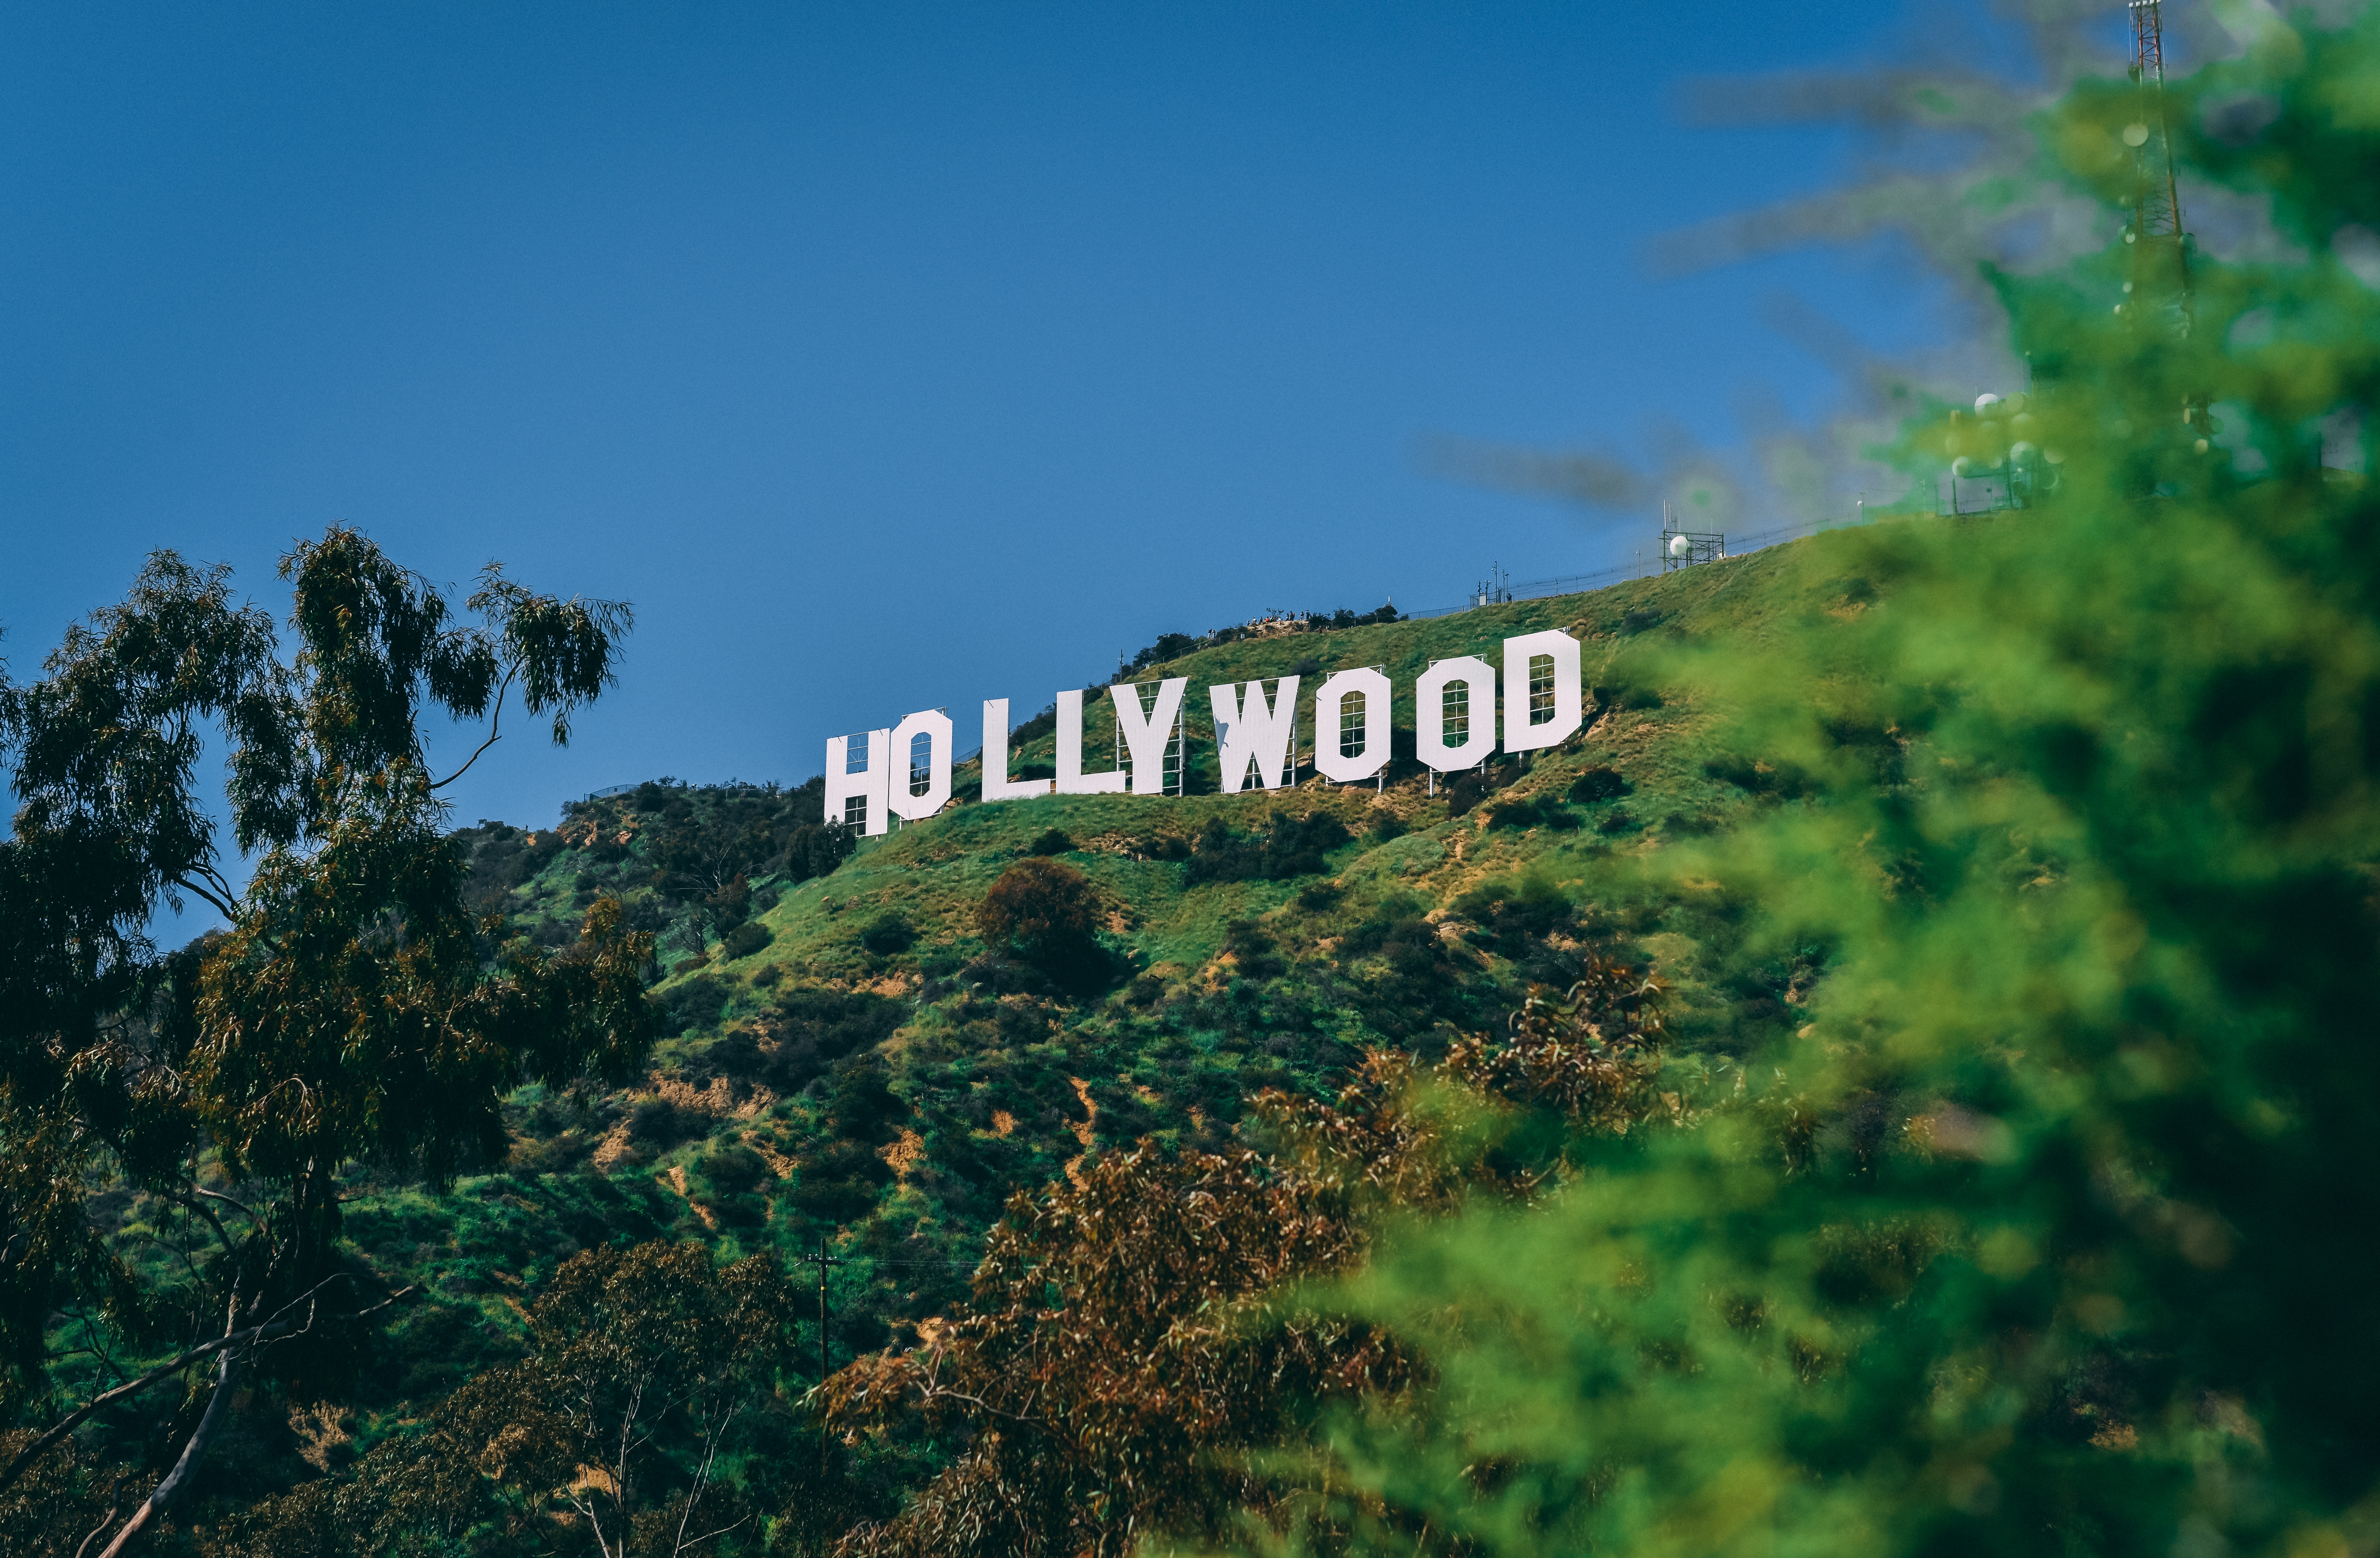 Recorre Hollywood para vivir una experiencia de verano inolvidable 
Los Ángeles desde $110